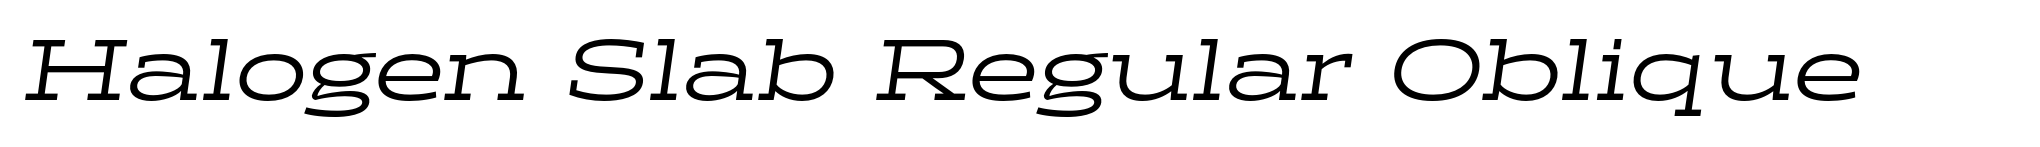 Halogen Slab Regular Oblique image